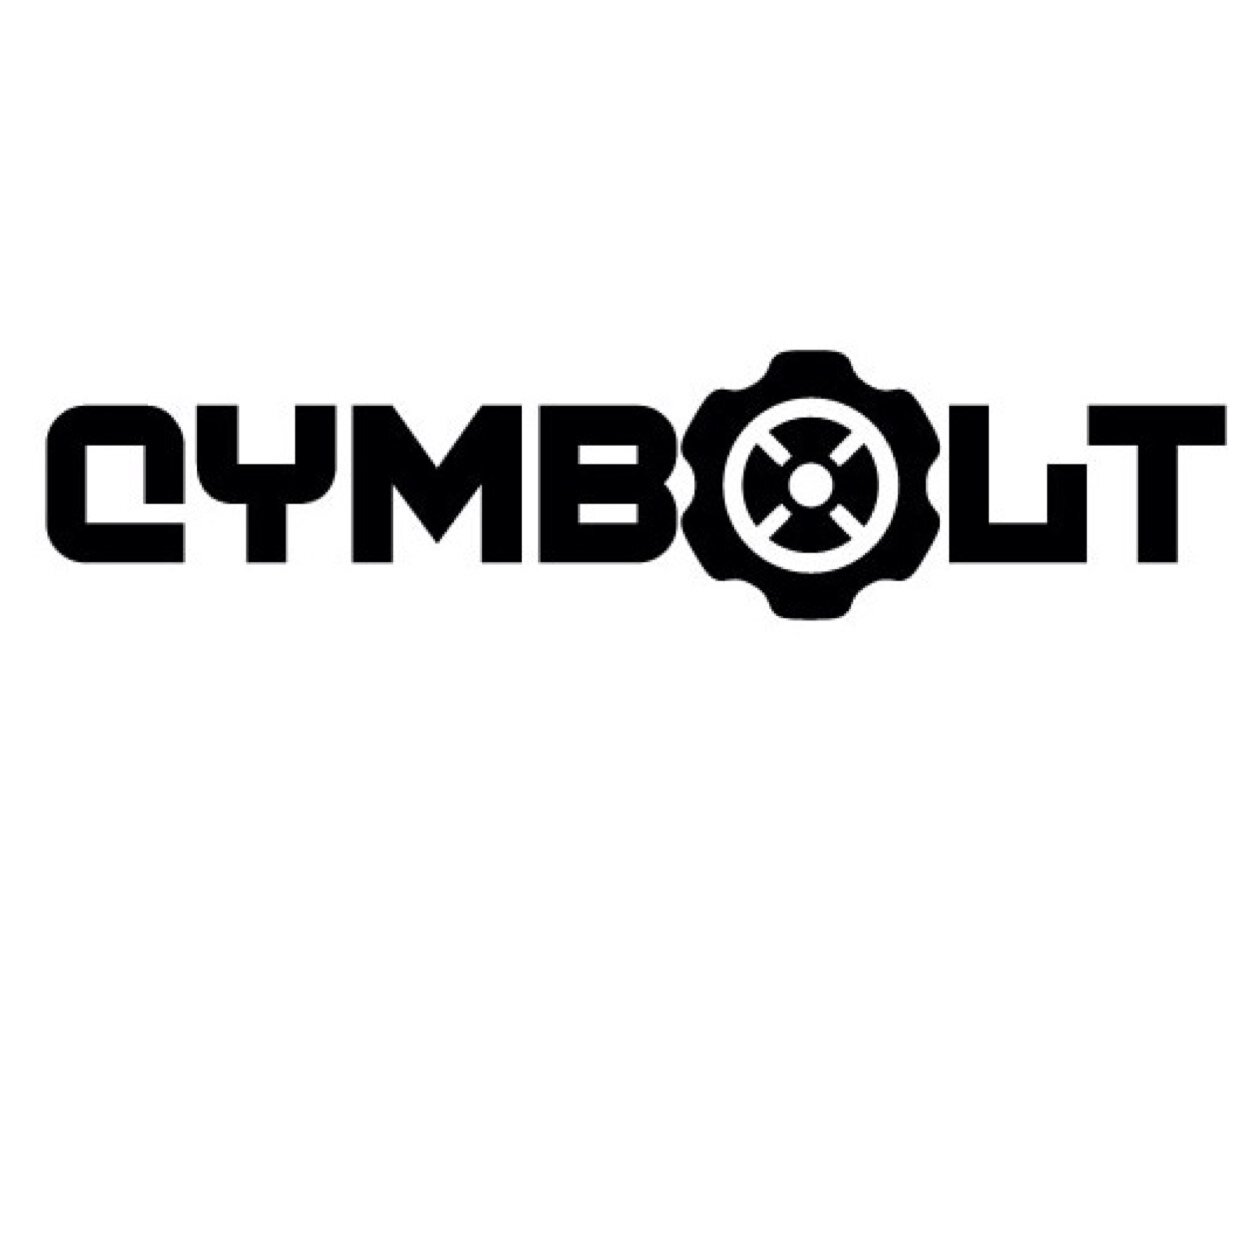 Cymbolt